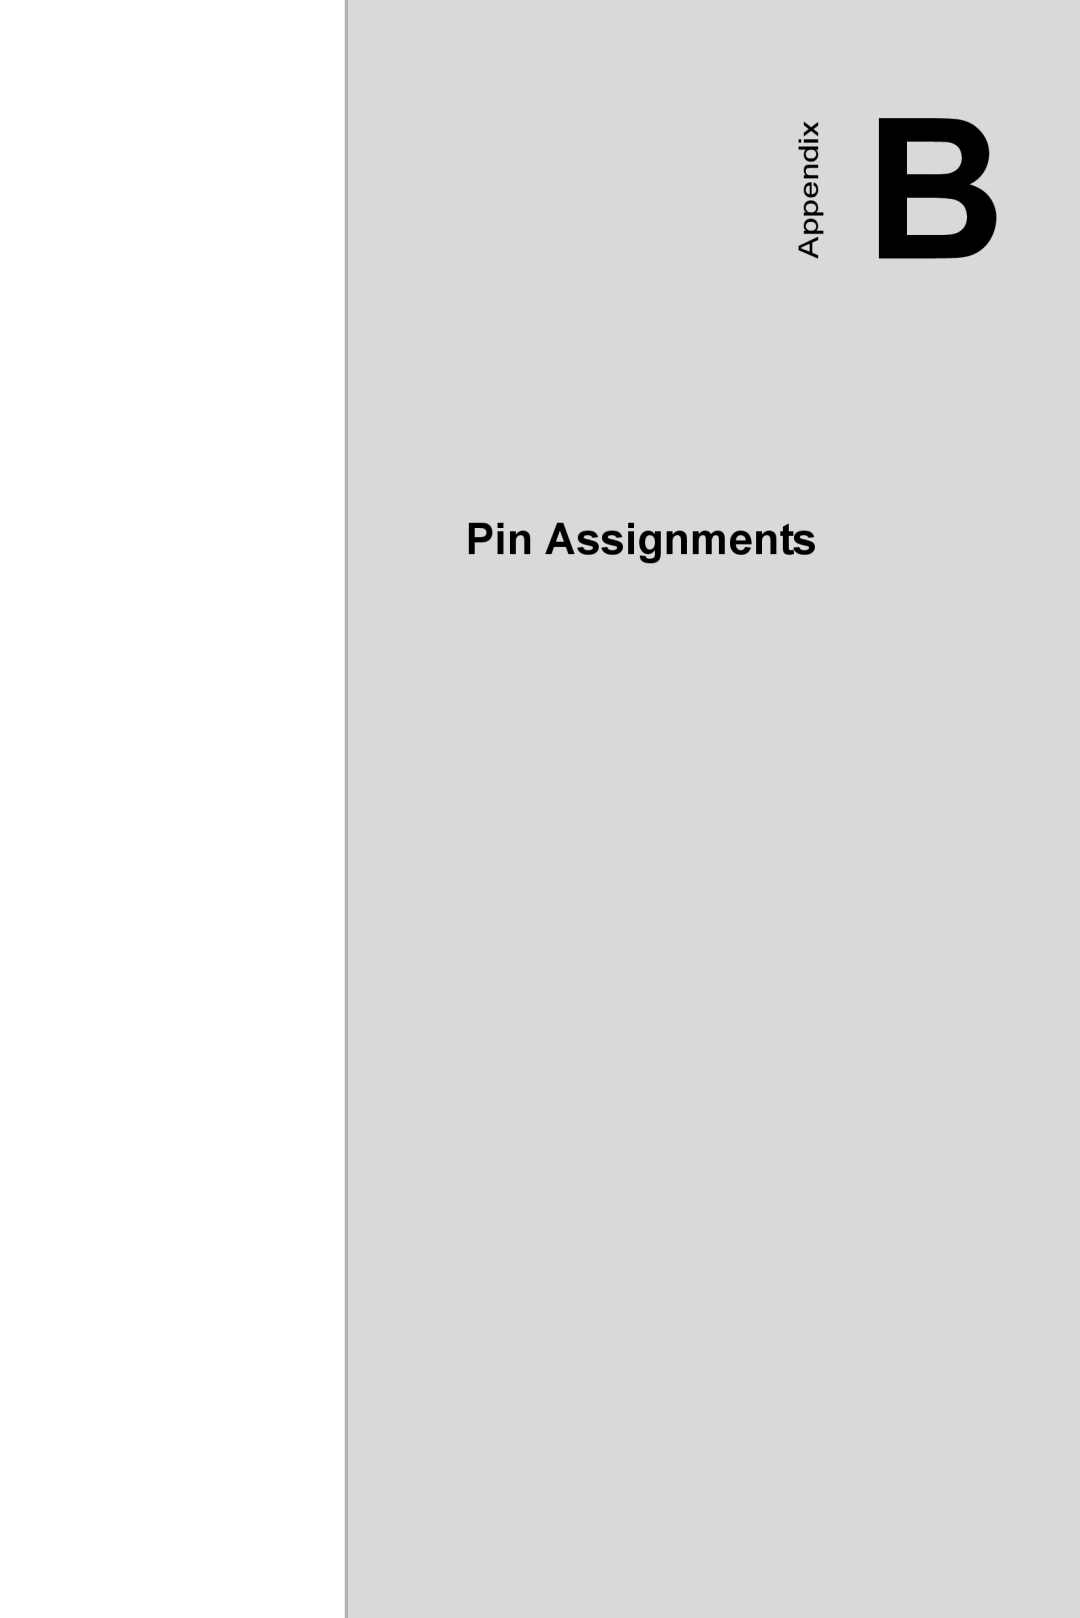 Advantech PCA-6185 user manual Pin Assignments, Appendix 